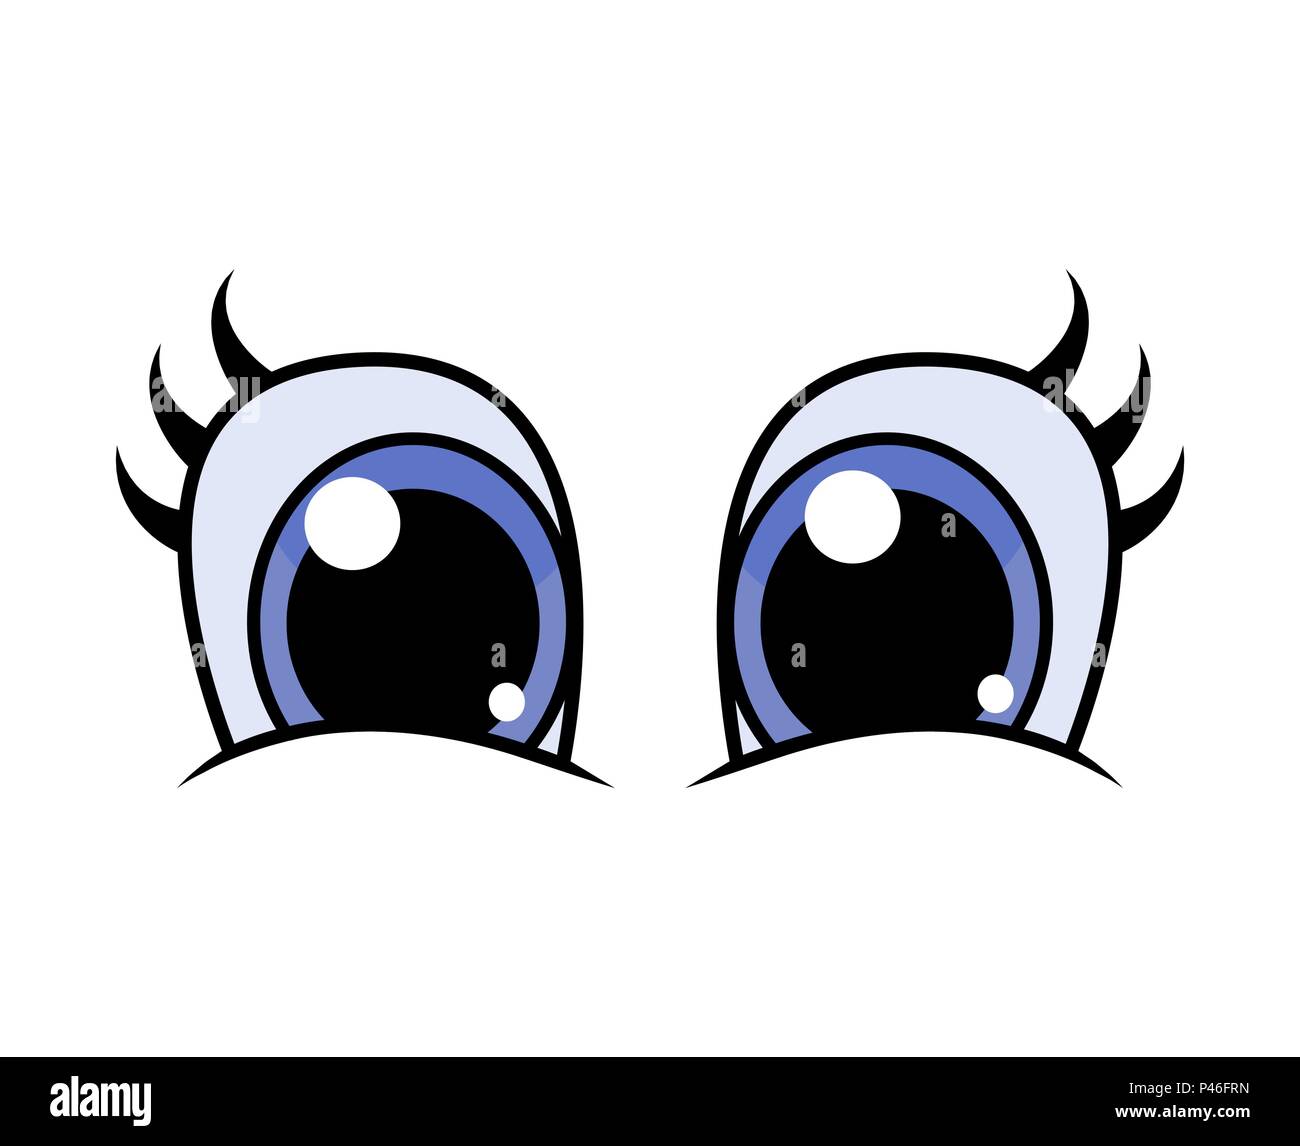 cartoon eye with eyelashes